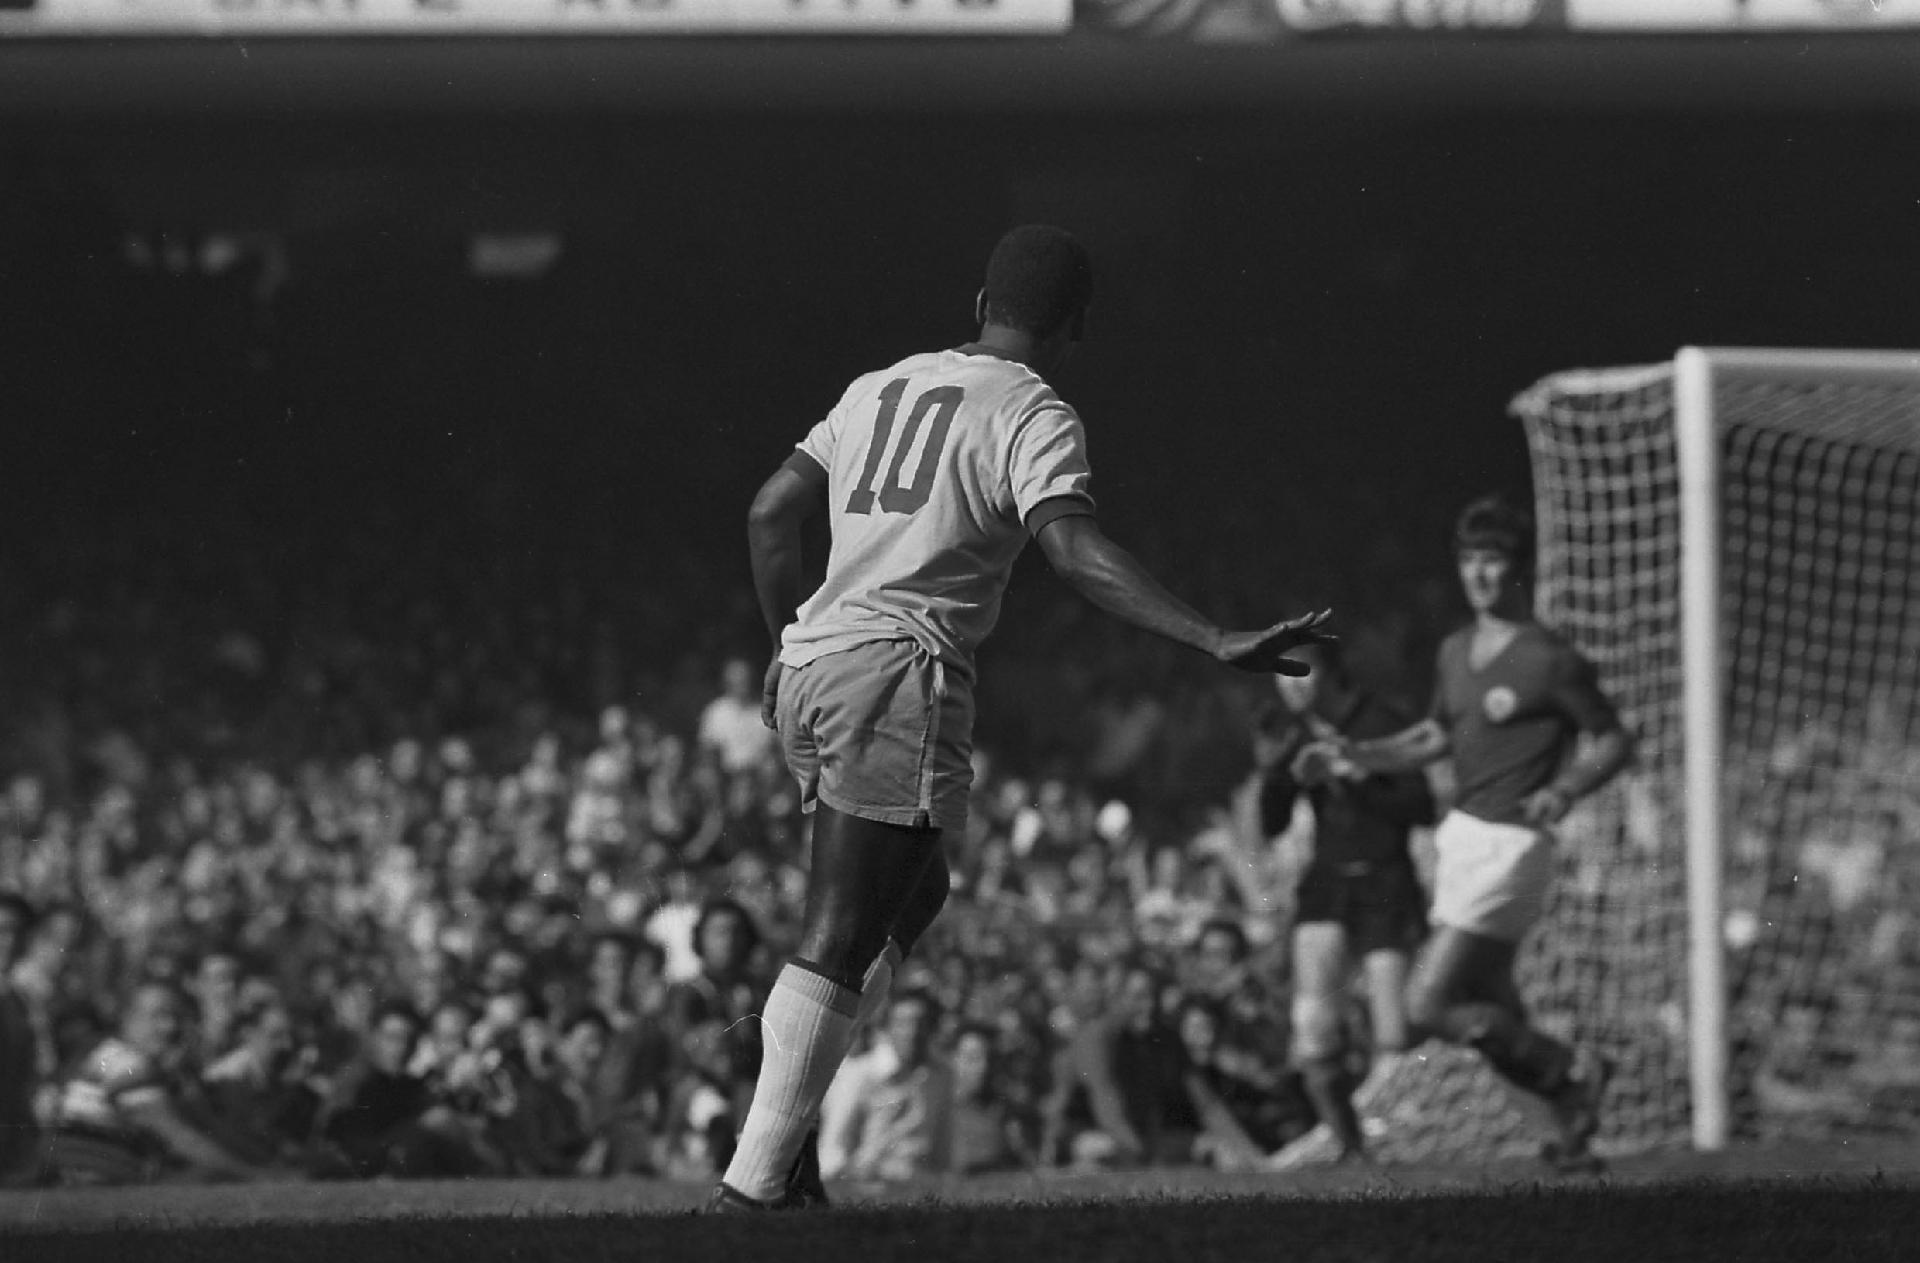 19/07/1971 - Pelé em lance contra a Iugoslávia no estádio do Maracanã, no Rio de Janeiro, na partida que marcou sua despedida da Seleção Brasileira de Futebol. - Estadão Conteúdo